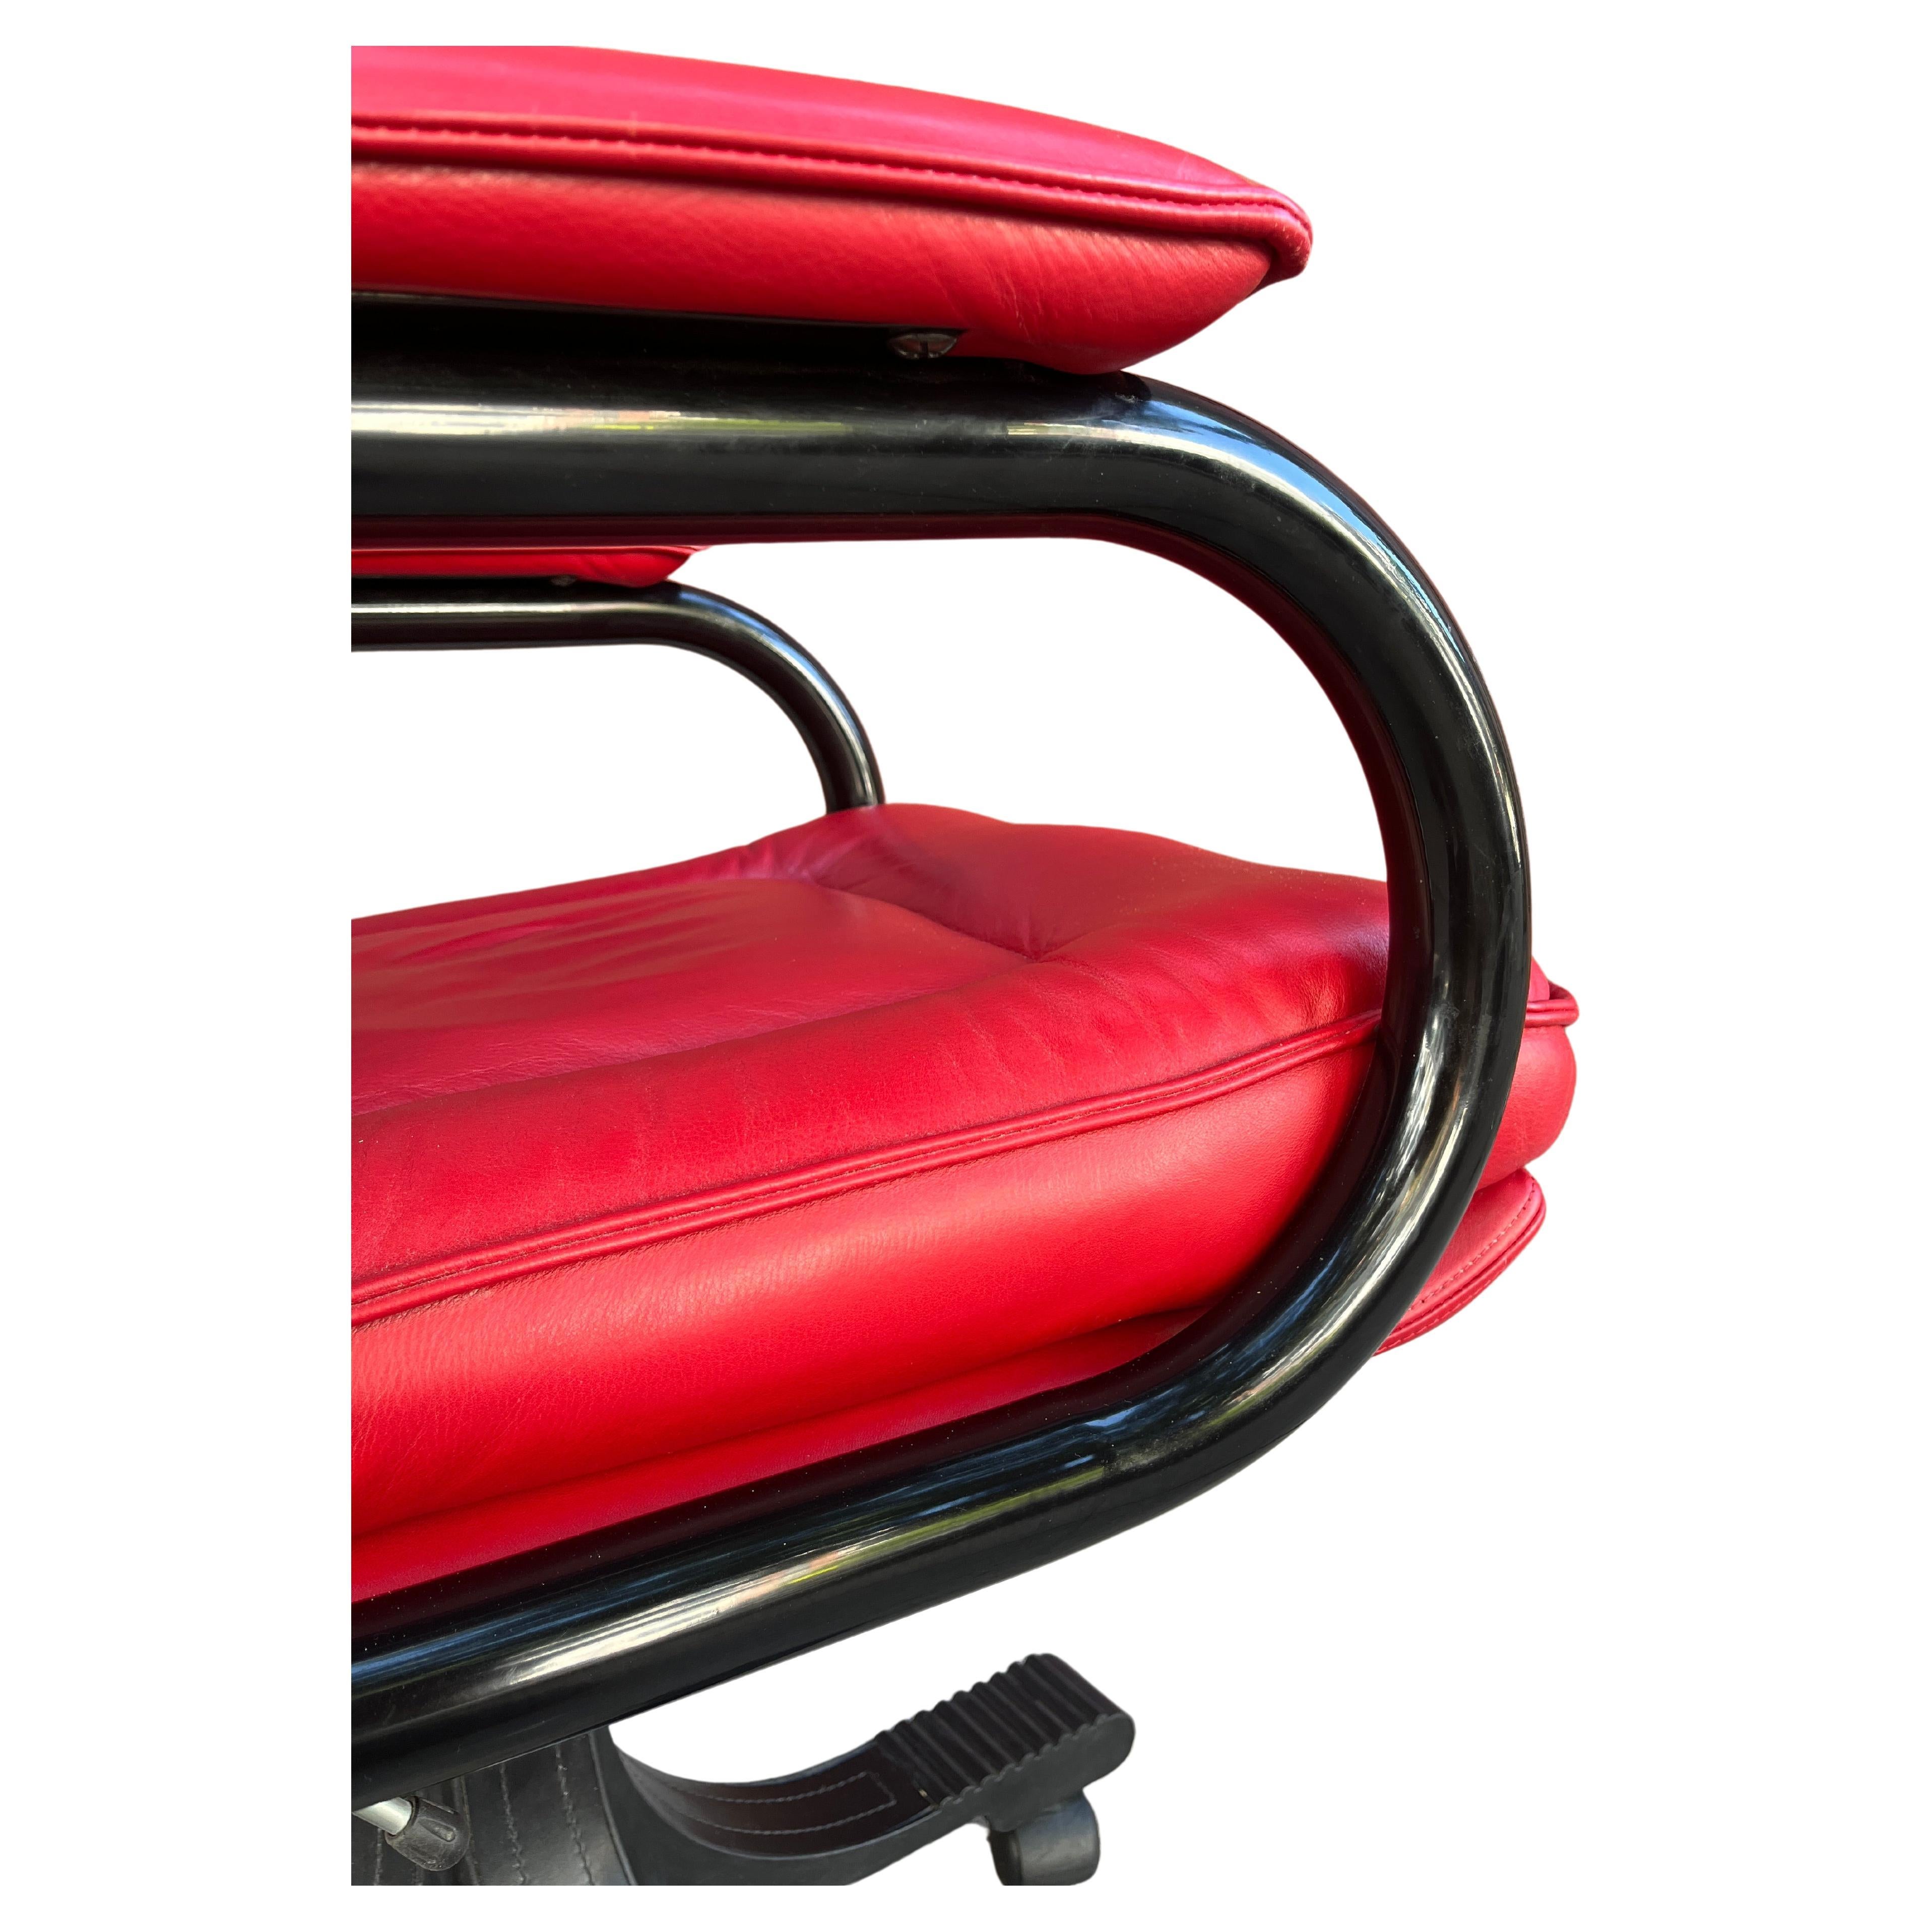 Cuir rouge doux comme du beurre  entoure cette étonnante chaise de gestion pivotante de Guido Faleschini, dotée d'un pad souple. Conçue pour i4 Mariani et commercialisée dans les années 1970 et 1980 par The Pace Collection. Sous la chaise se trouve